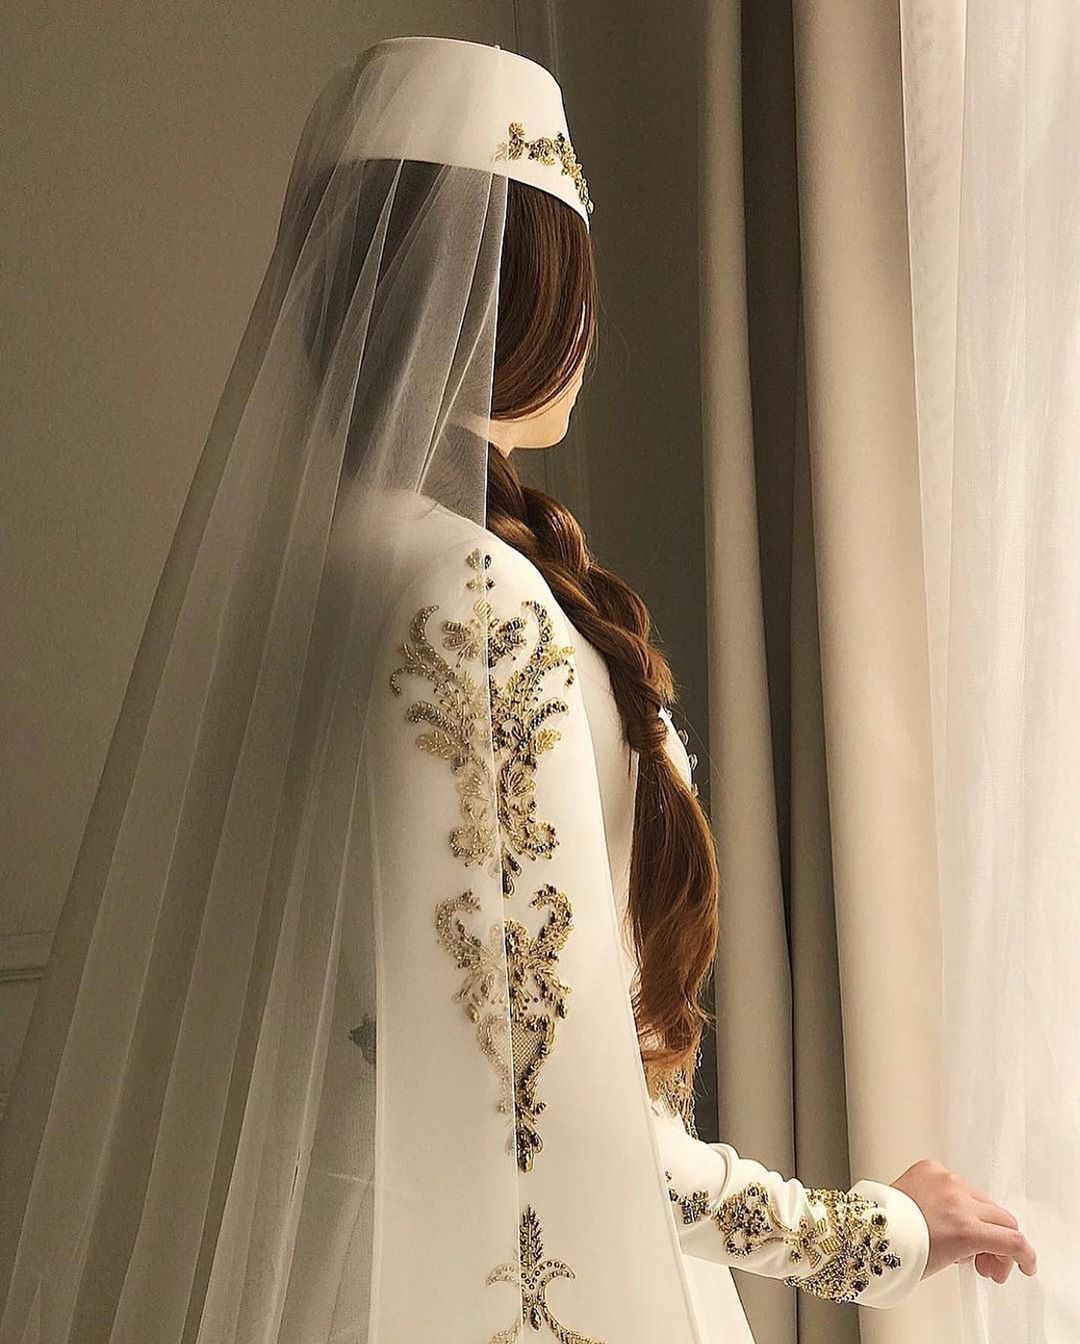  مدل لباس عروس اینستاگرام 